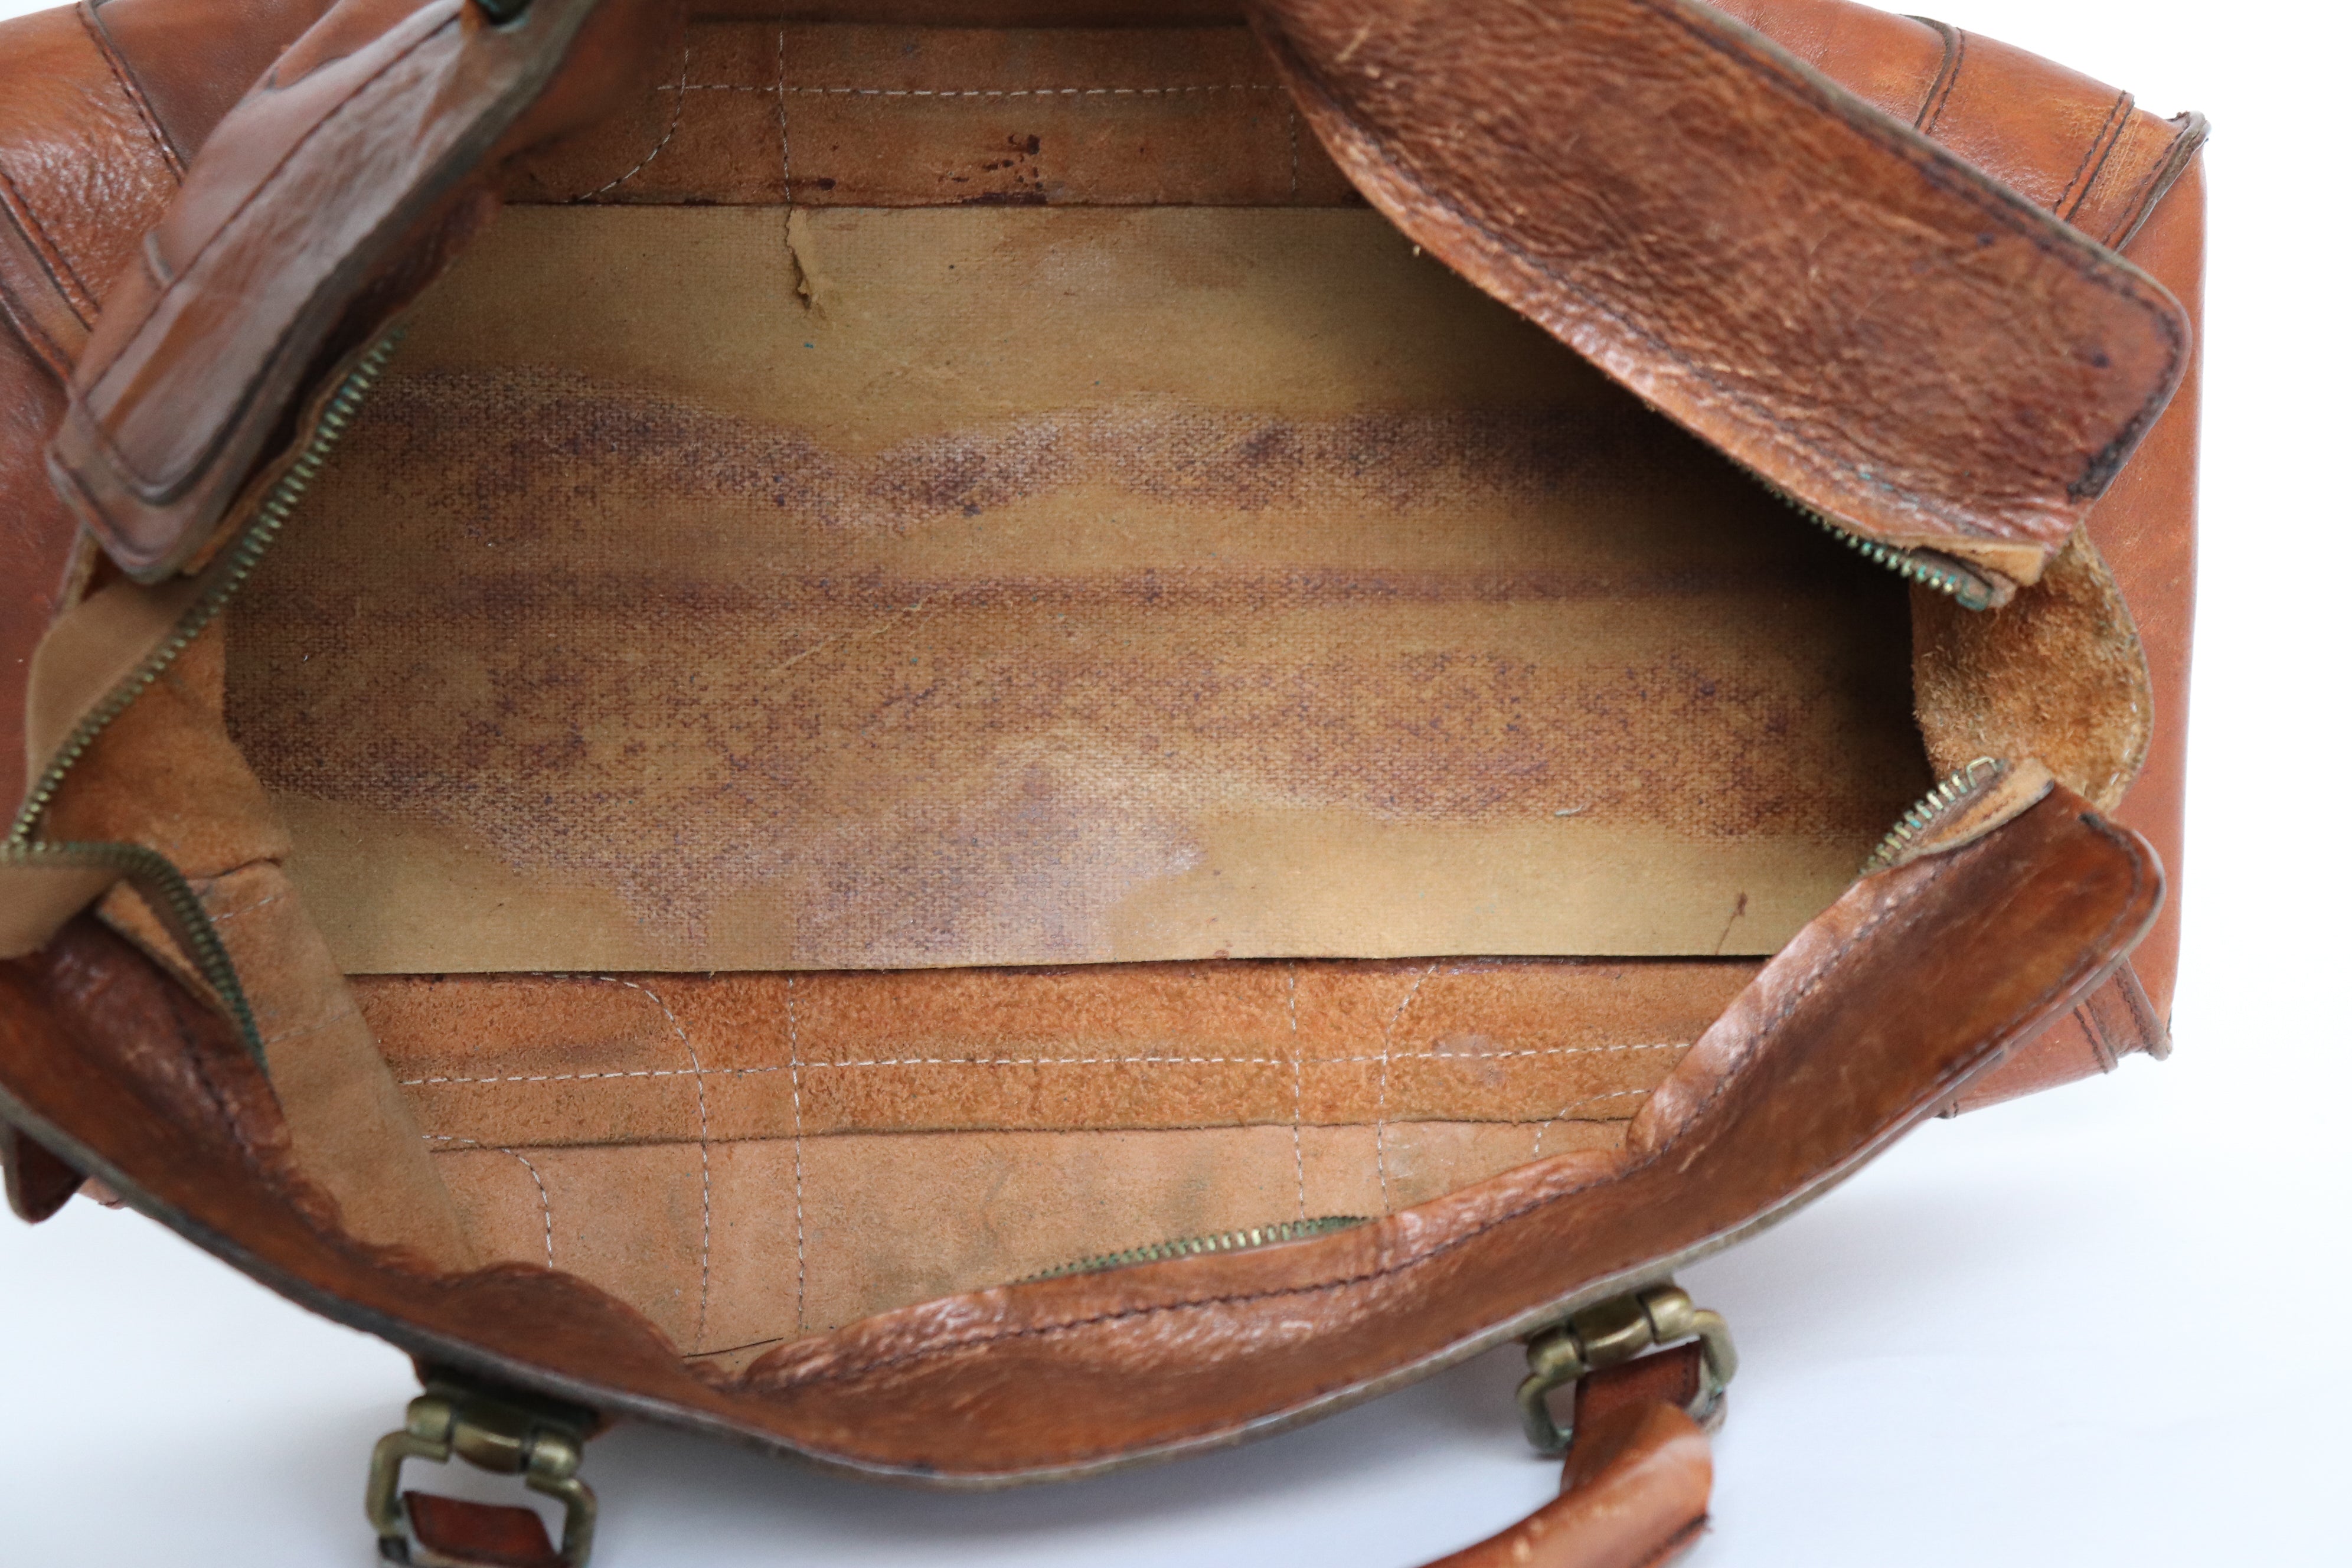 Large Tan Brown Vintage Tote / Top Handle Bag - Gren - 1970s